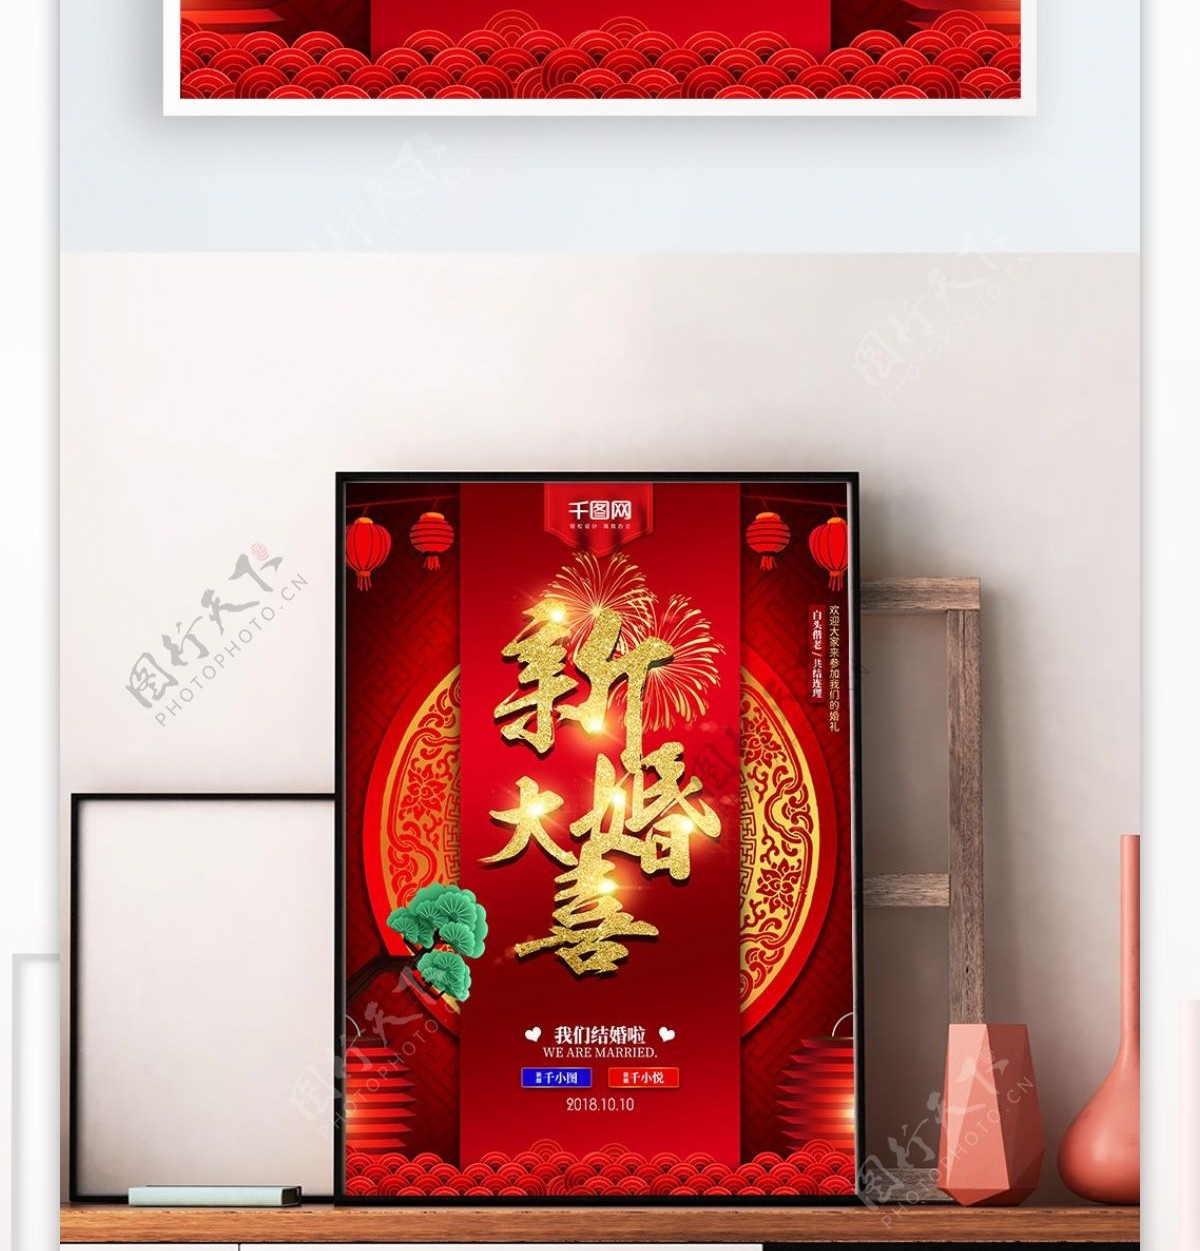 中国风红色中式婚礼婚礼海报